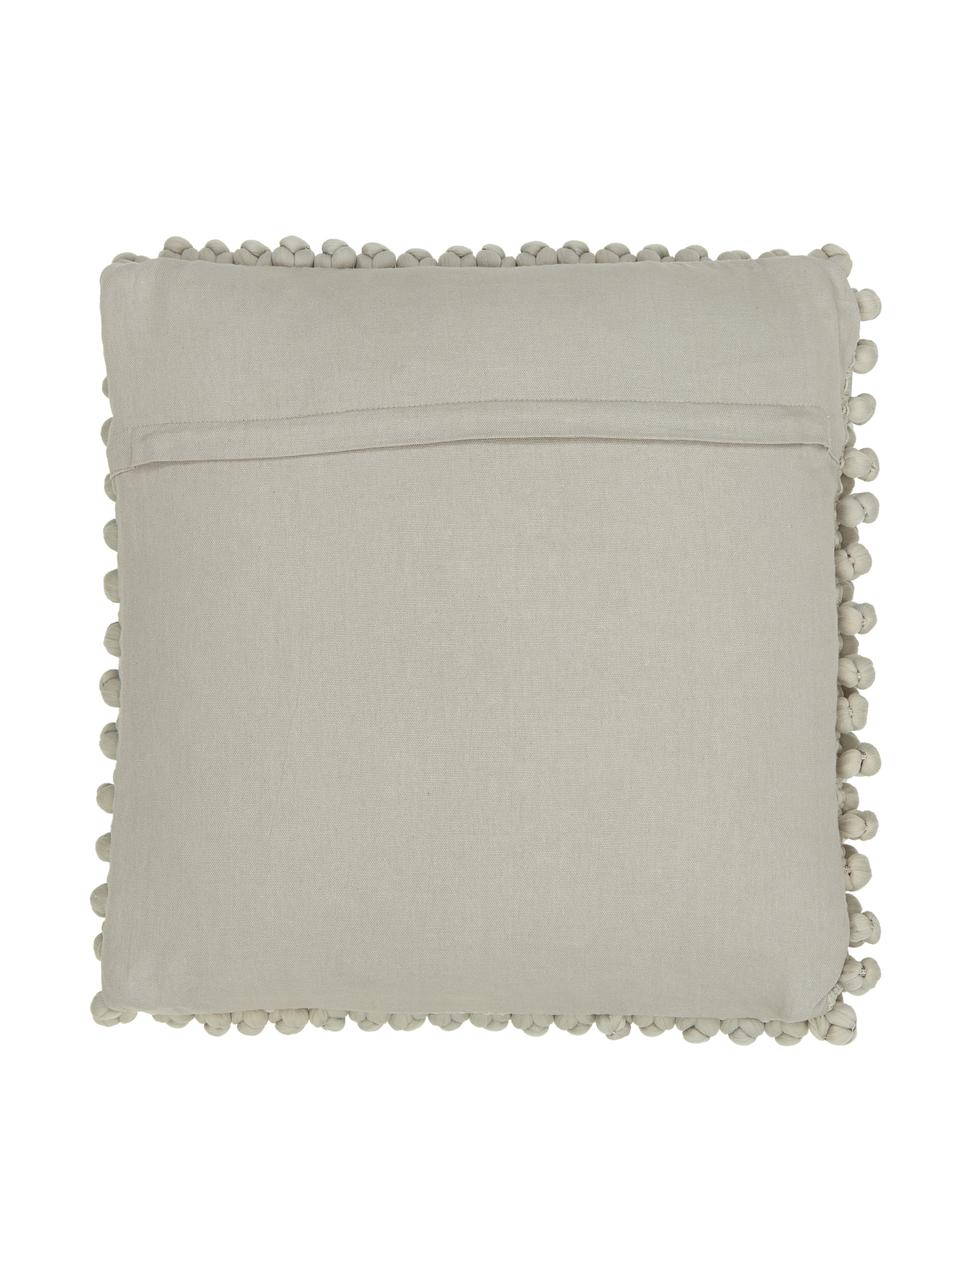 Kissenhülle Iona in Grau, Vorderseite: 76% Polyester, 24% Baumwo, Rückseite: 100% Baumwolle, Grau, 45 x 45 cm